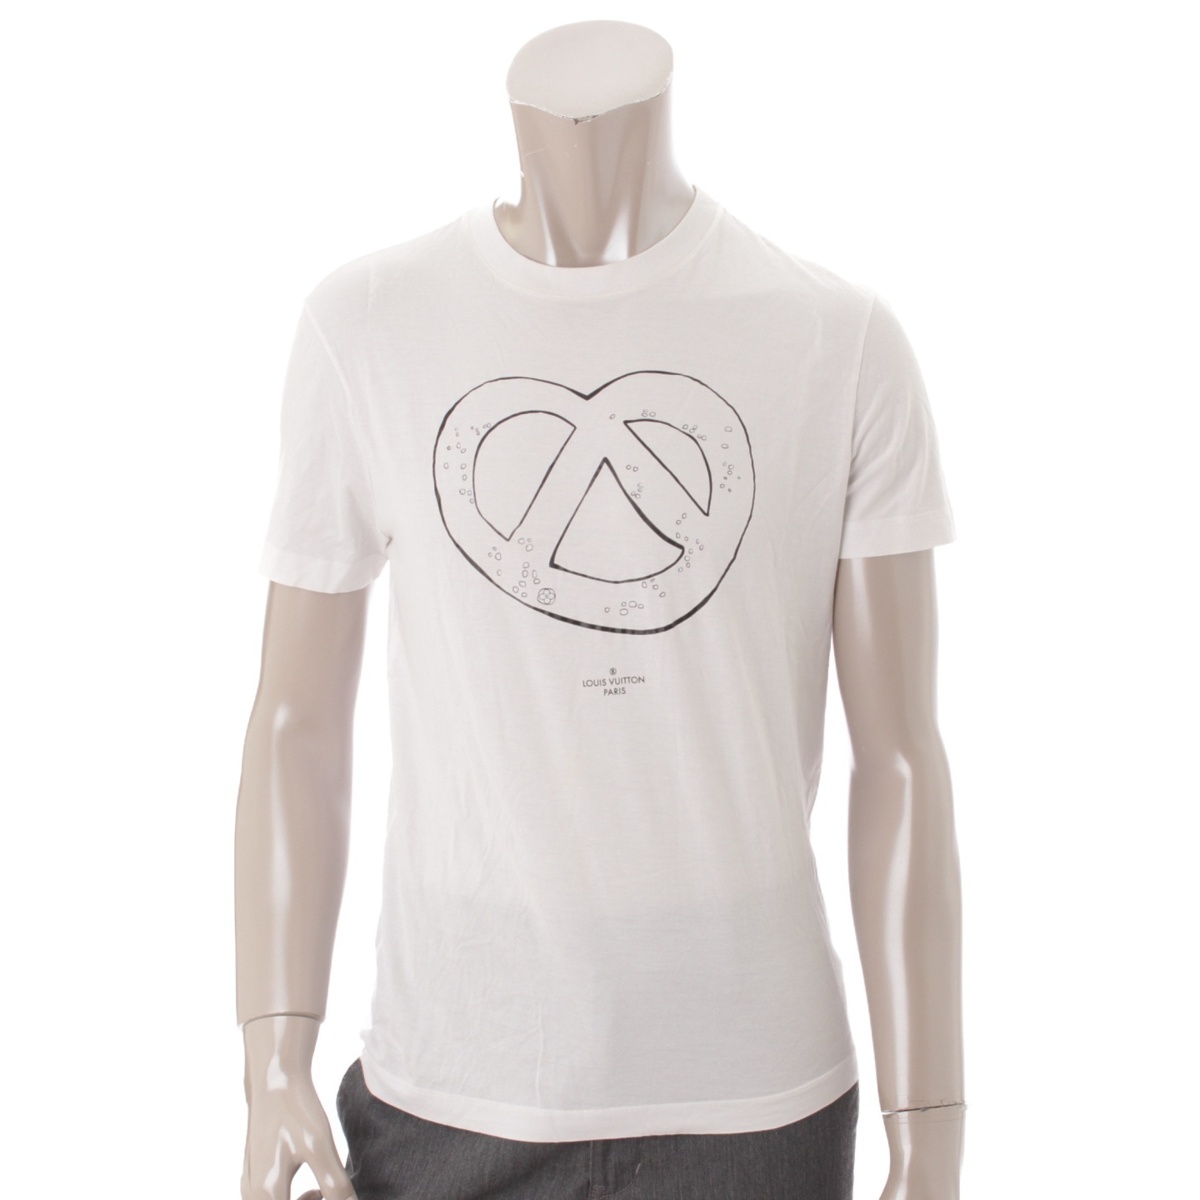 ルイヴィトン(Louis Vuitton) メンズ コットン プレッツェル プリント Tシャツ ホワイト XS